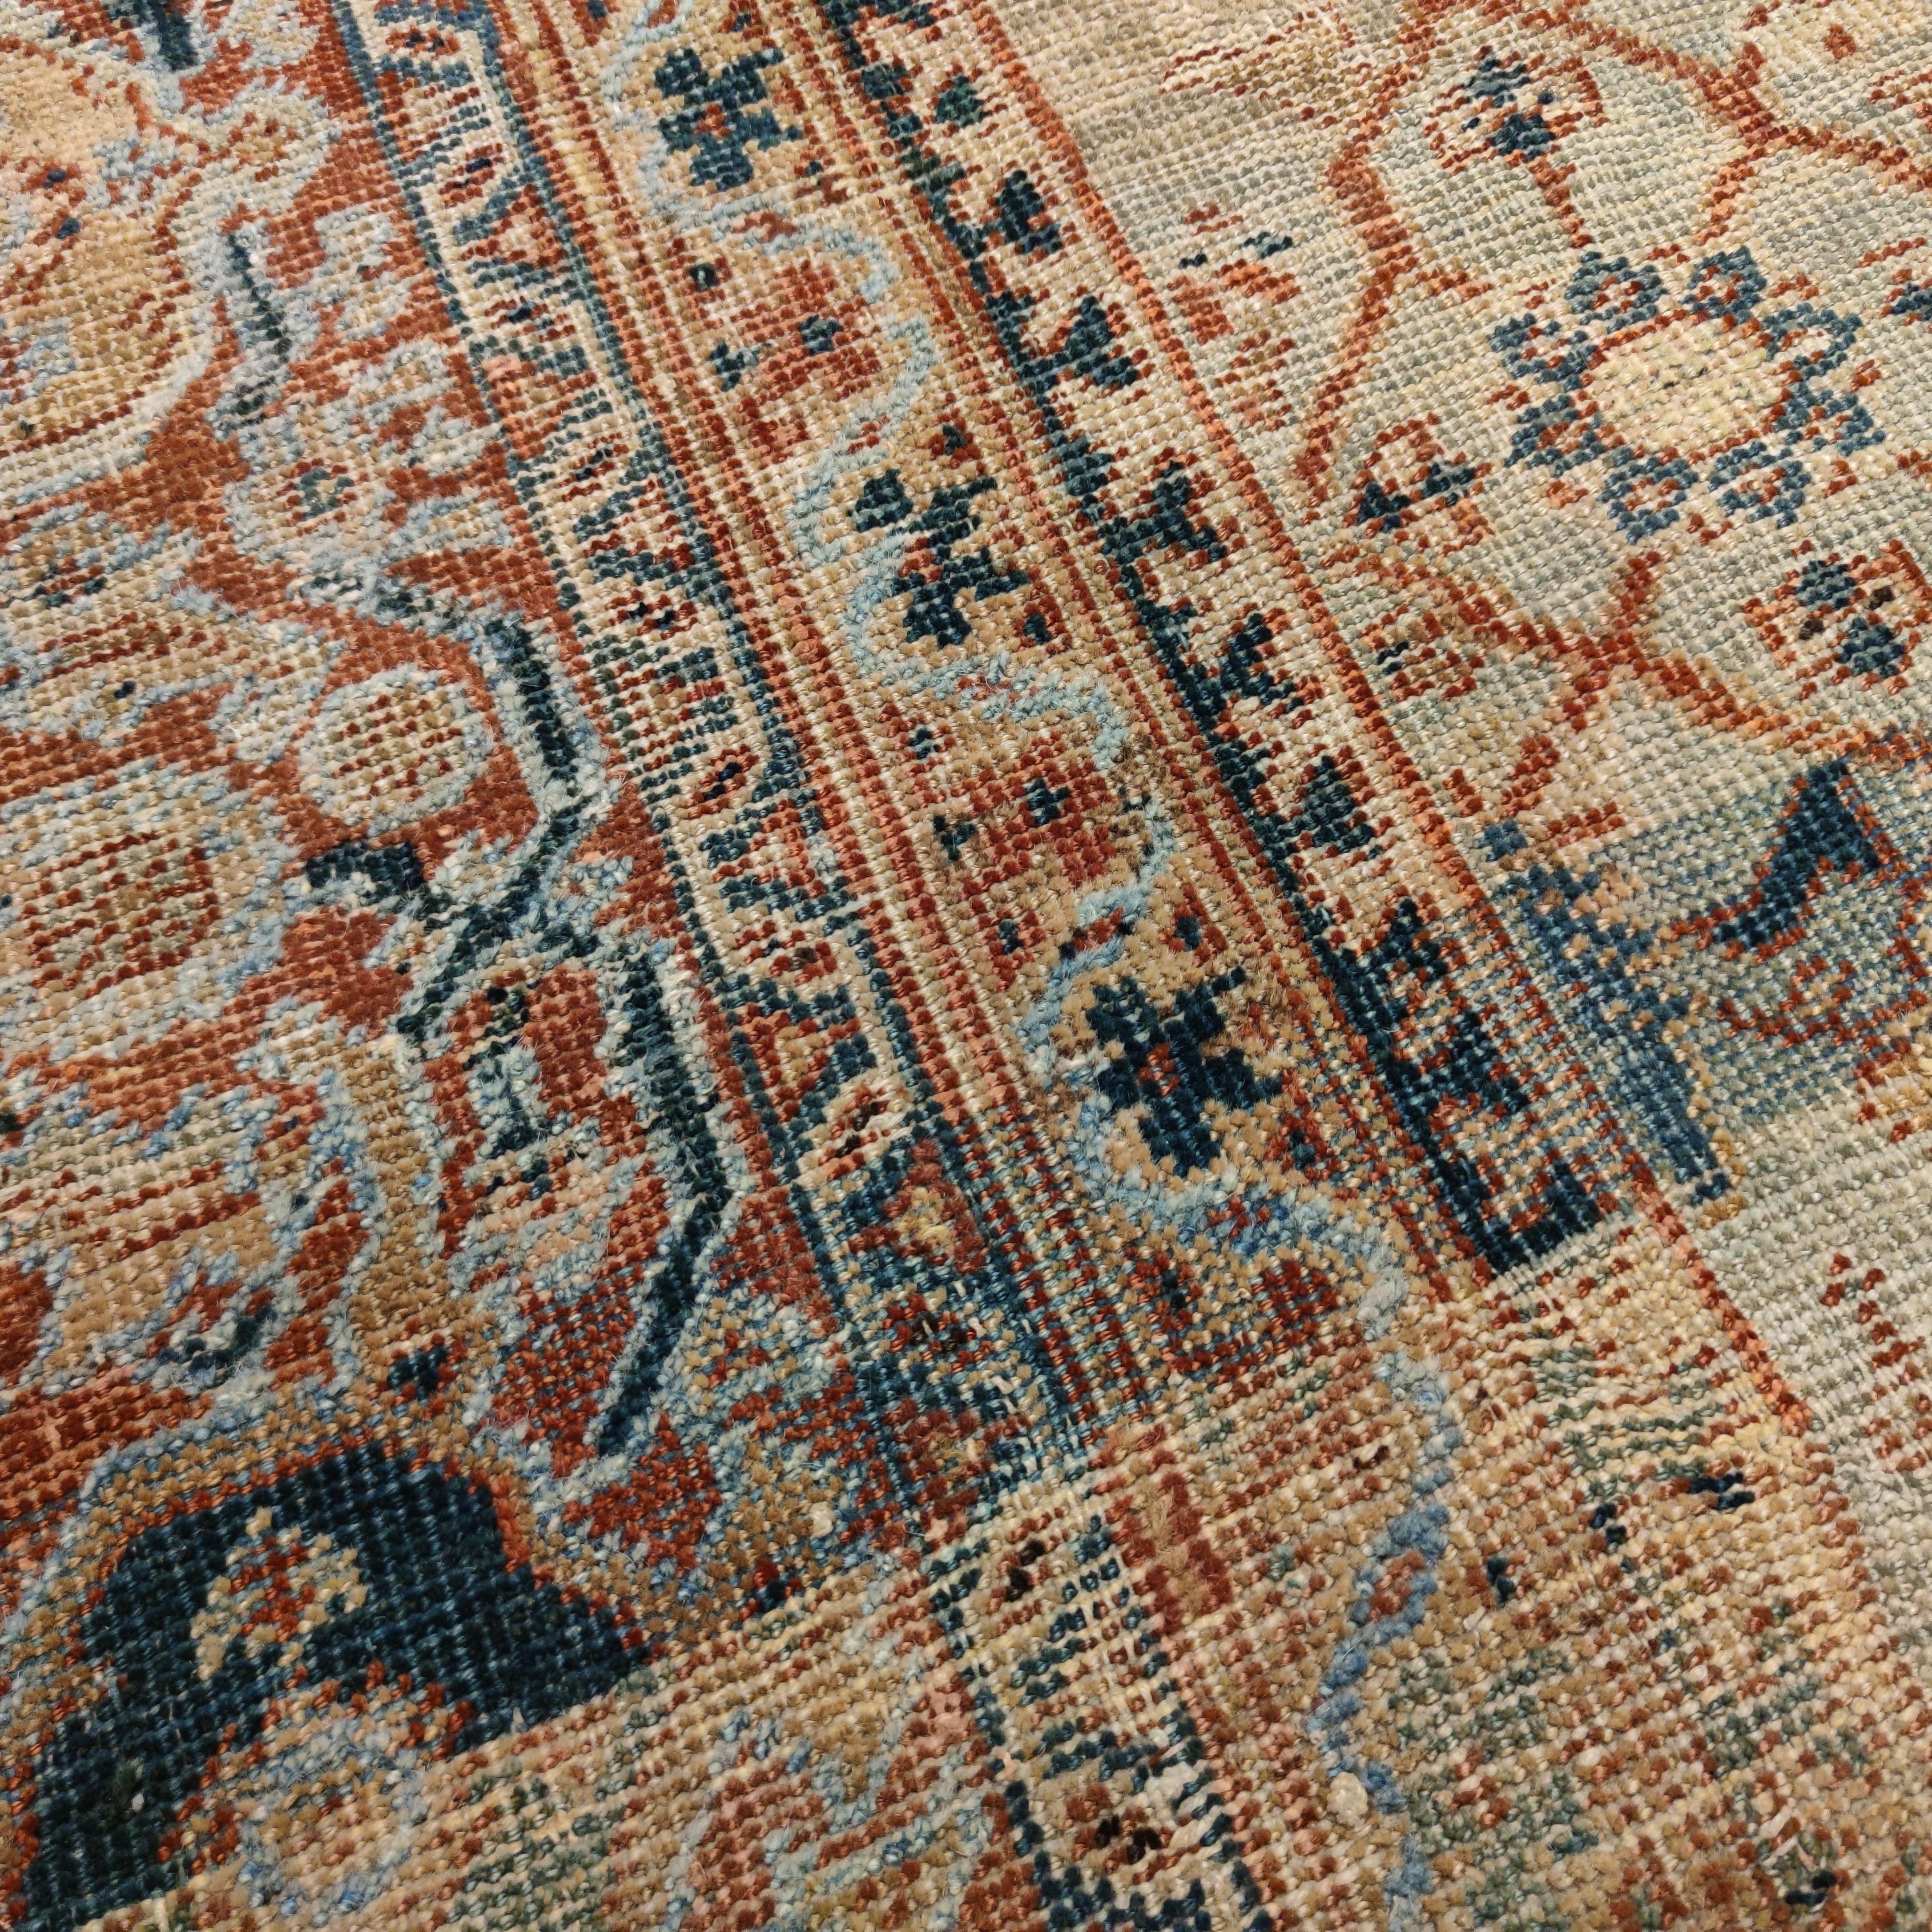 Les tapis tissés par la société anglo-suisse Ziegler & Co. à la fin du XIXe siècle dans la région d'Arak se caractérisent souvent par des motifs persans classiques rendus dans des couleurs très raffinées, où les fils de laine sont teints de façon